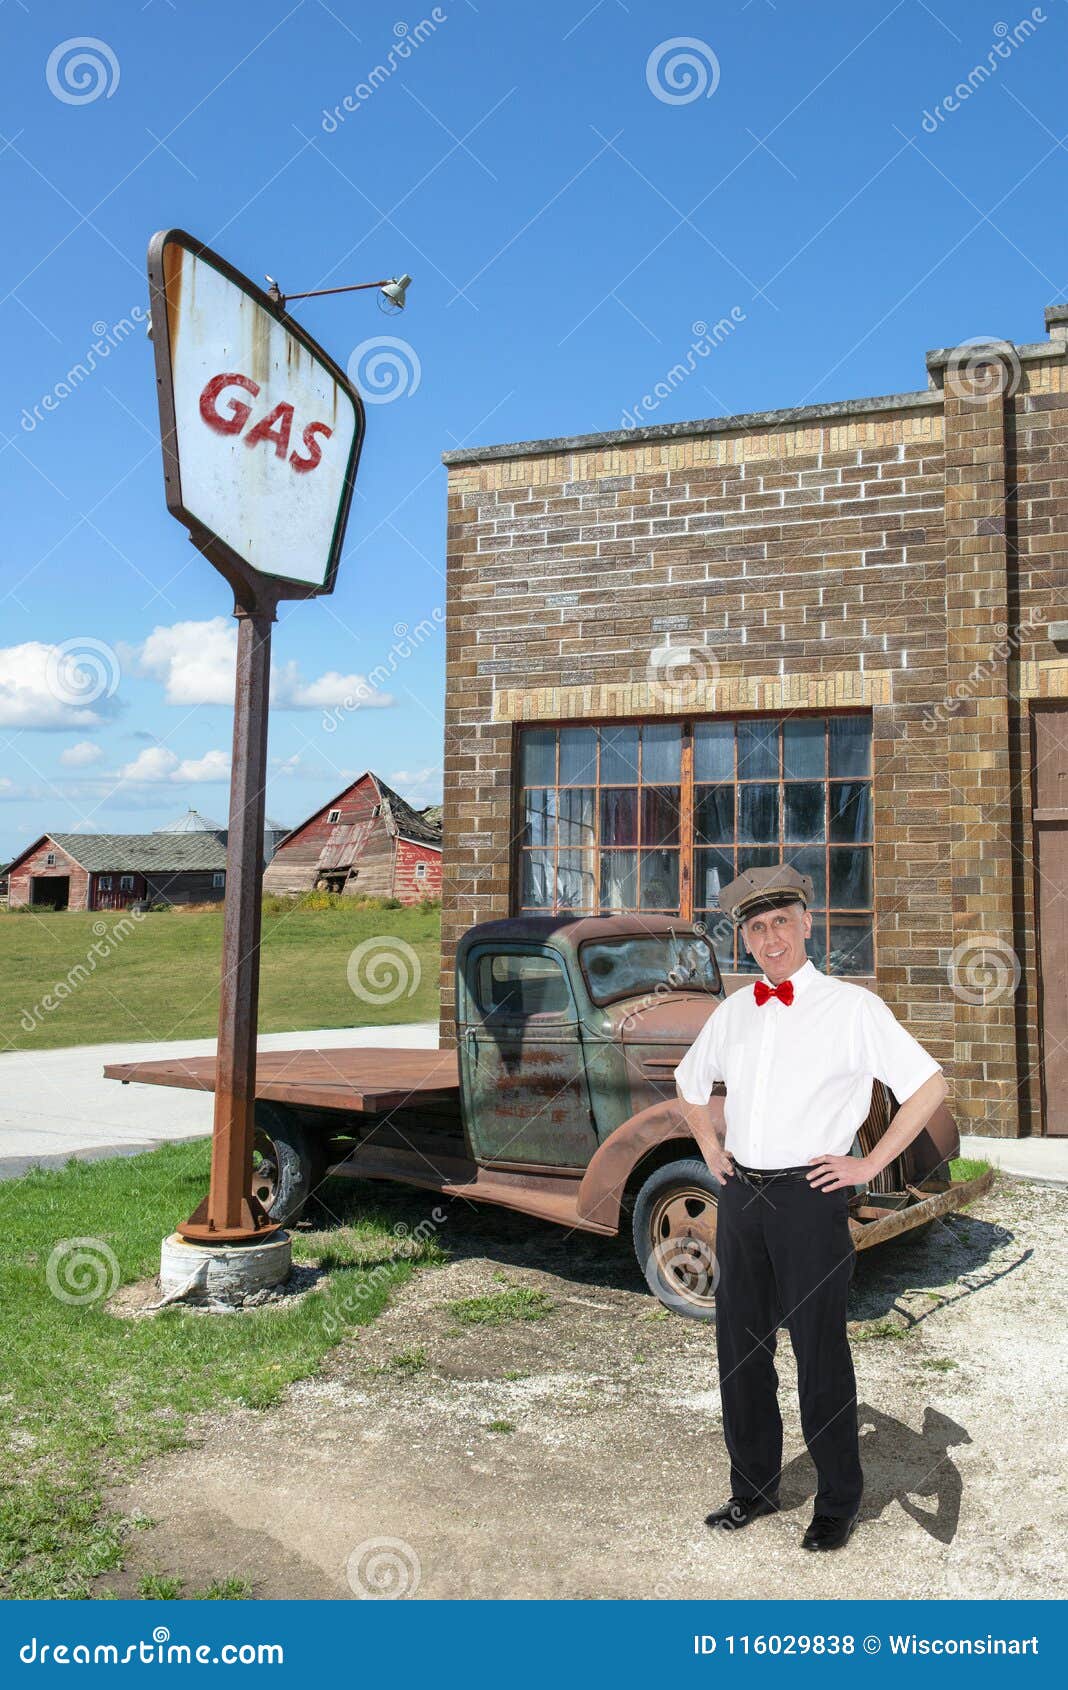 vintage gas station, attendant, nostalgia